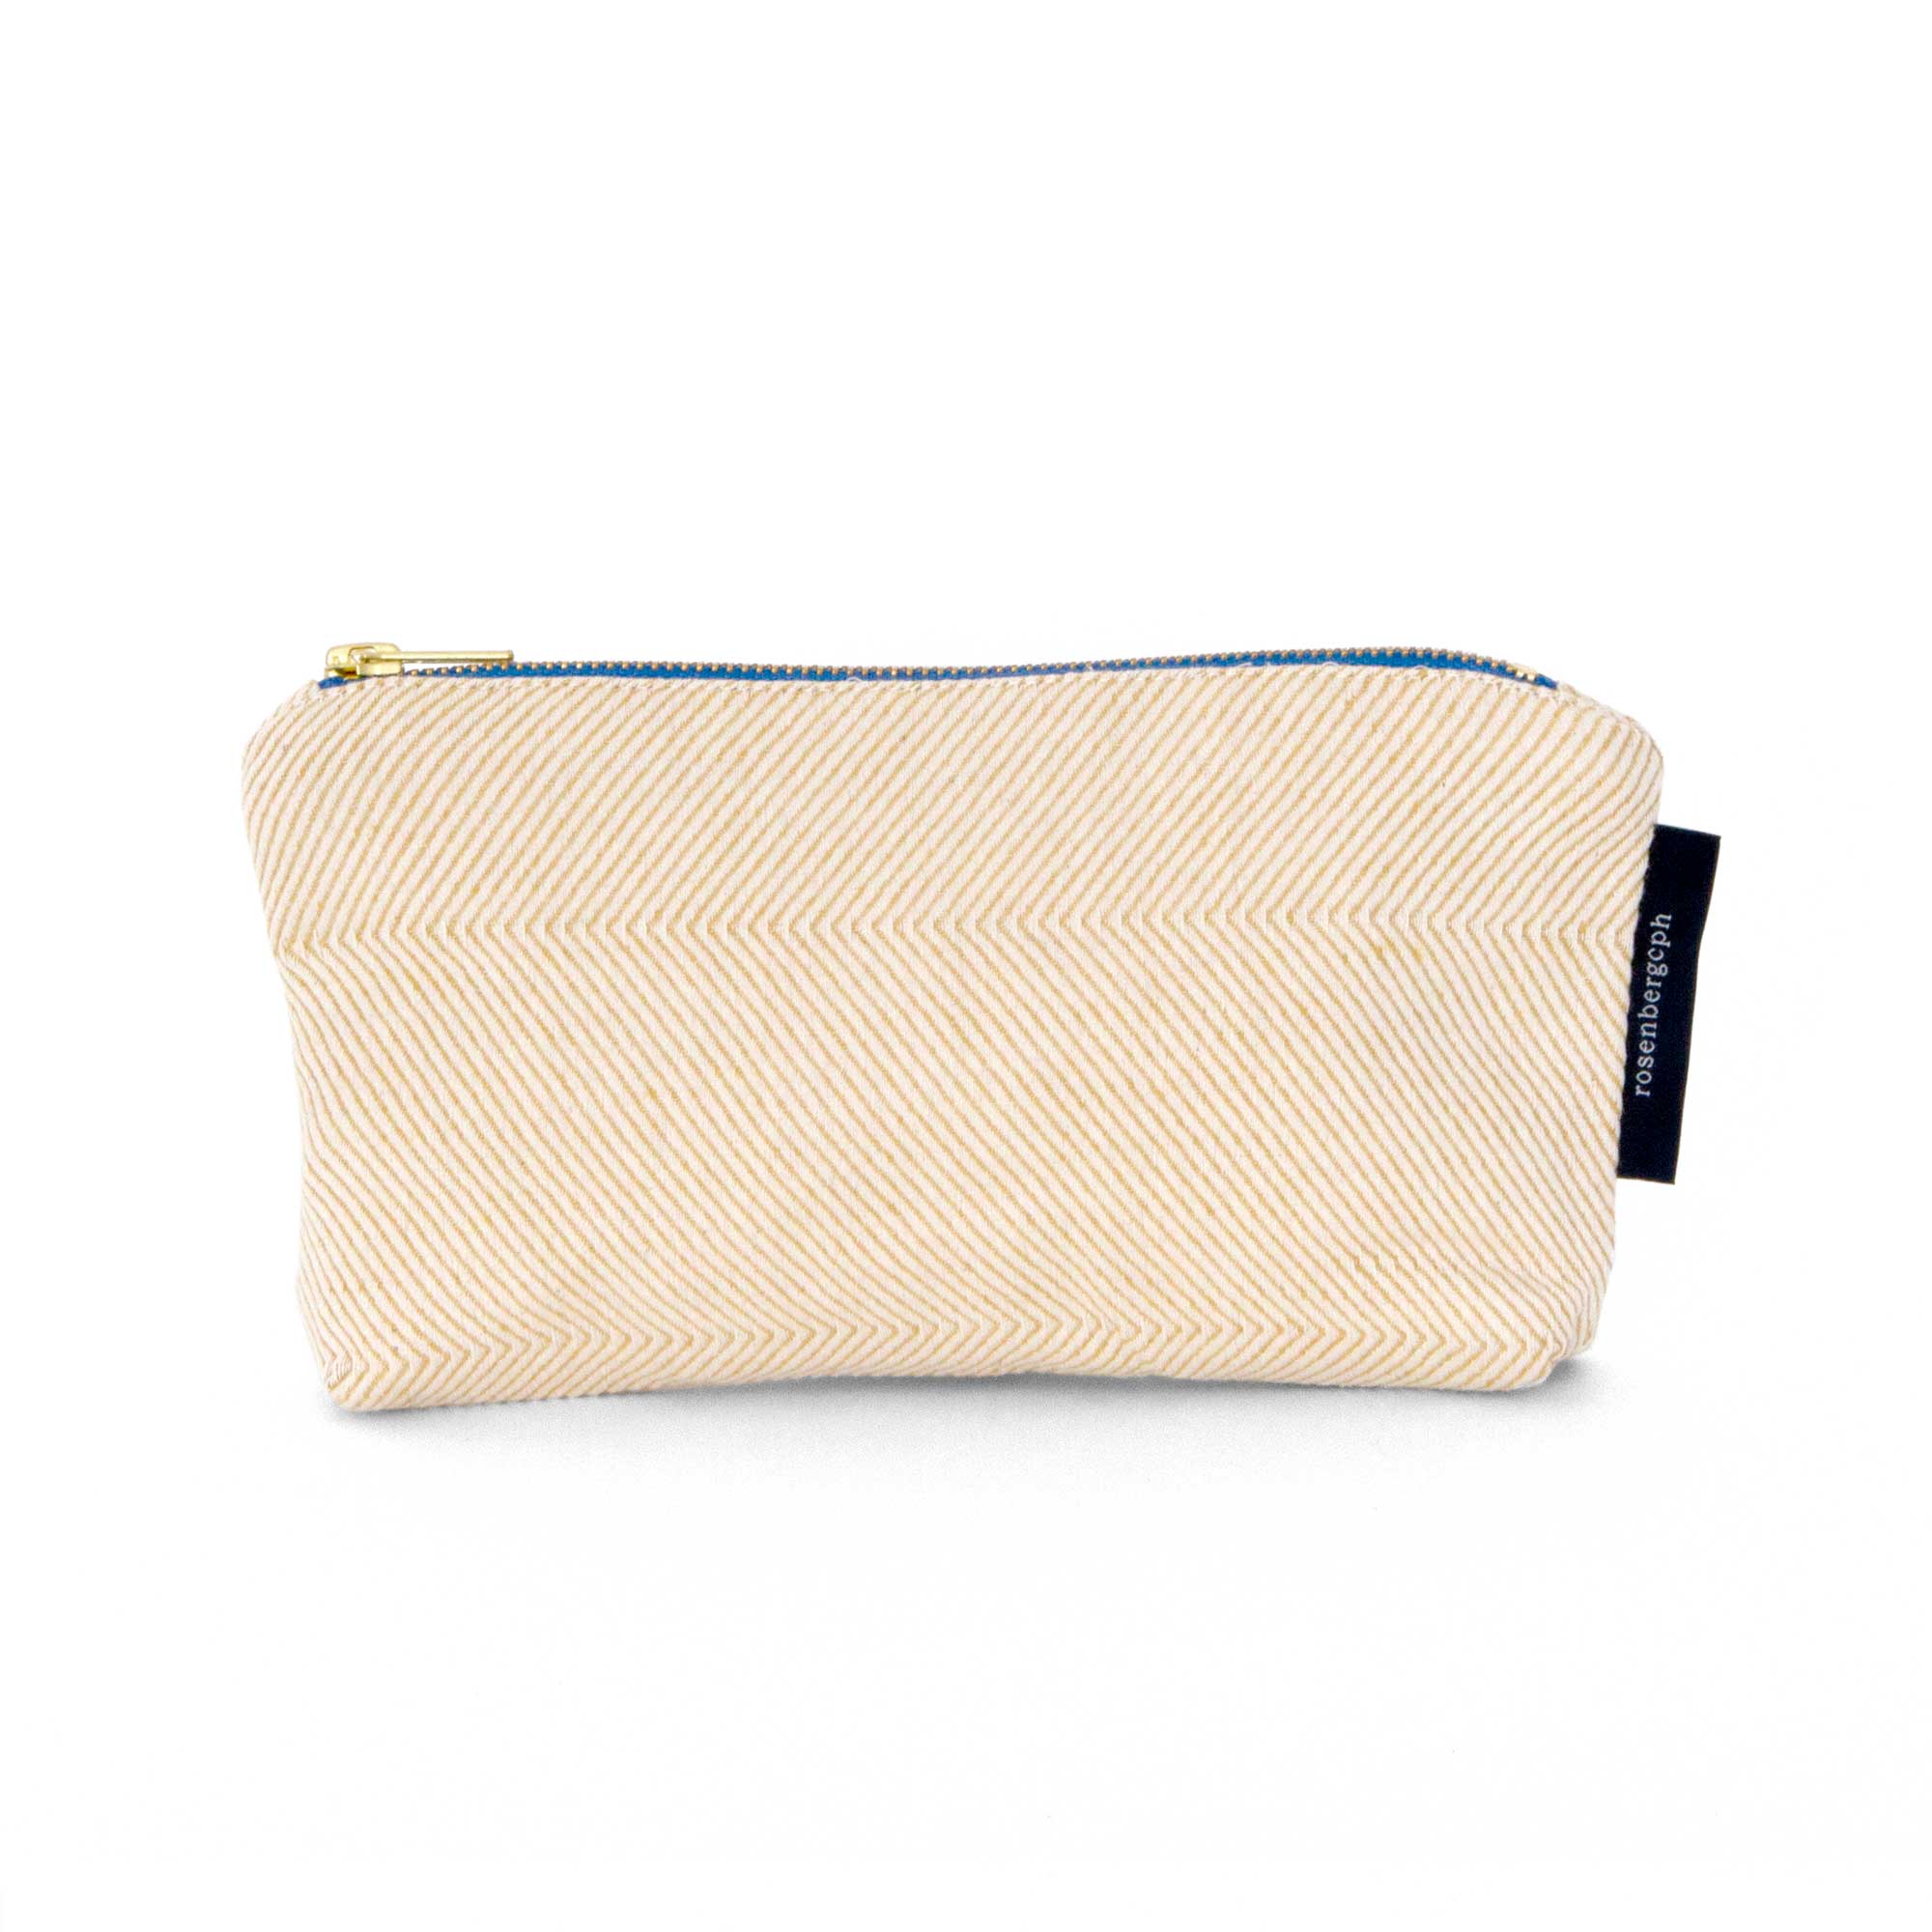 Shift linen/cotton purse, light hay yellow, design Anne Rosenberg, RosenbergCph